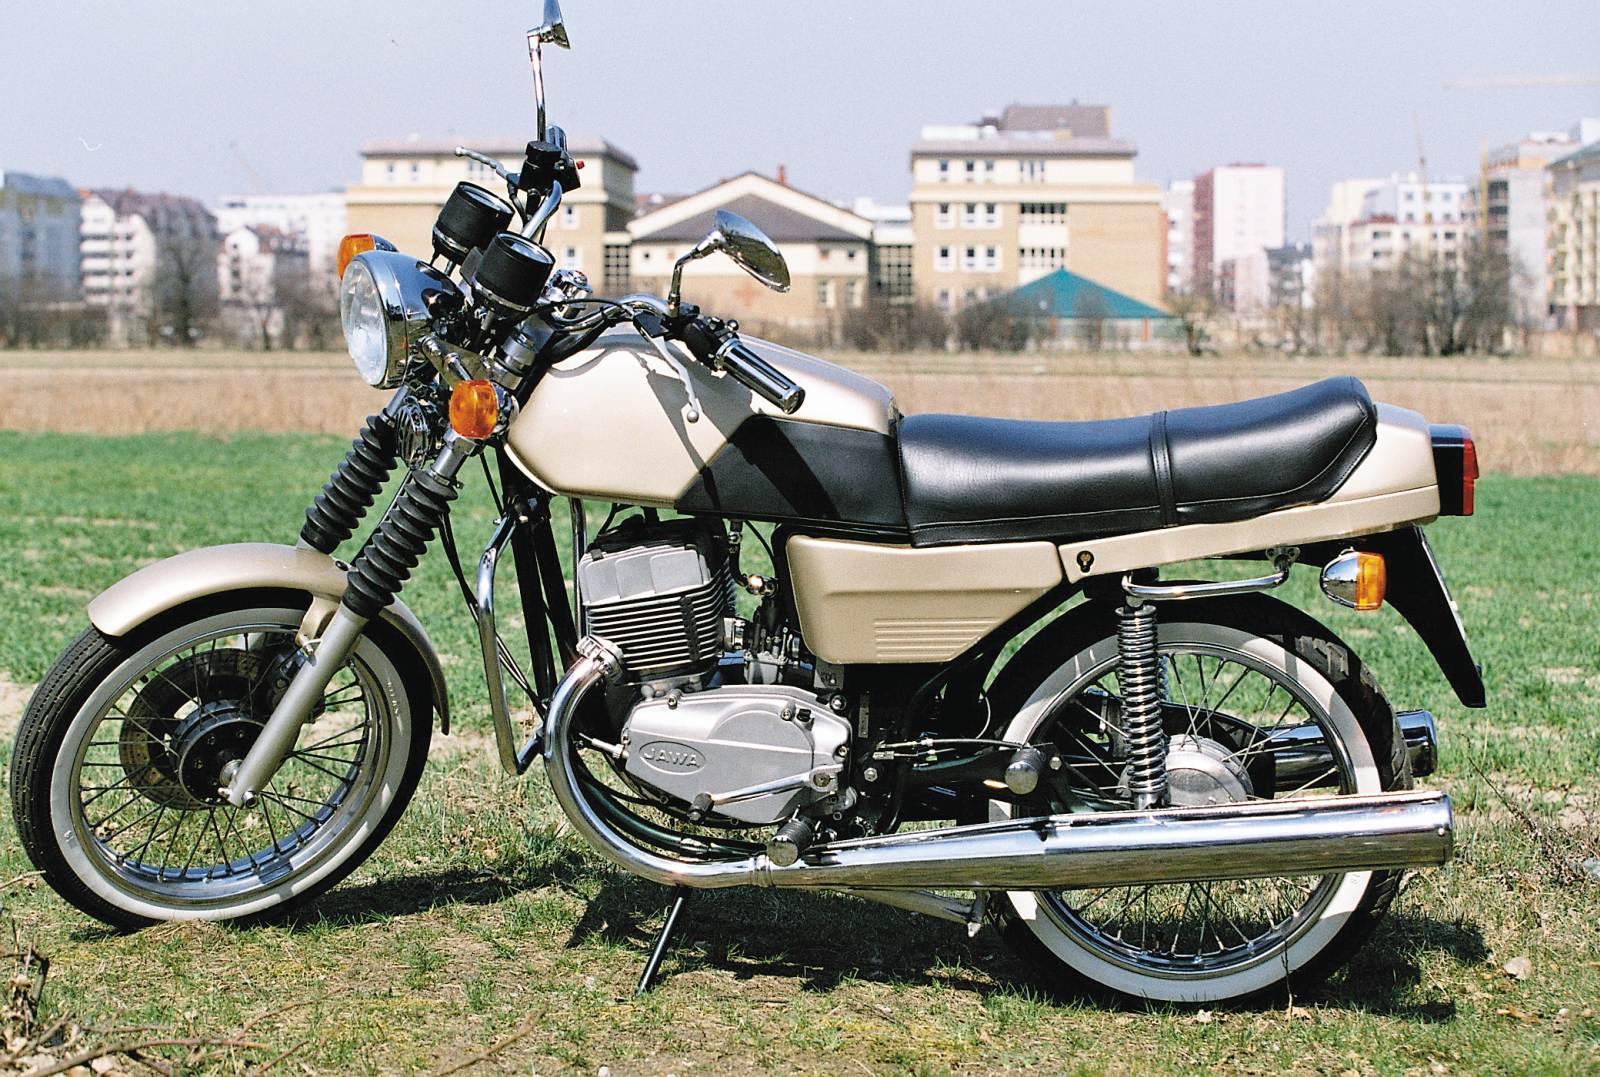 Jawa TS 350 - oldtimer